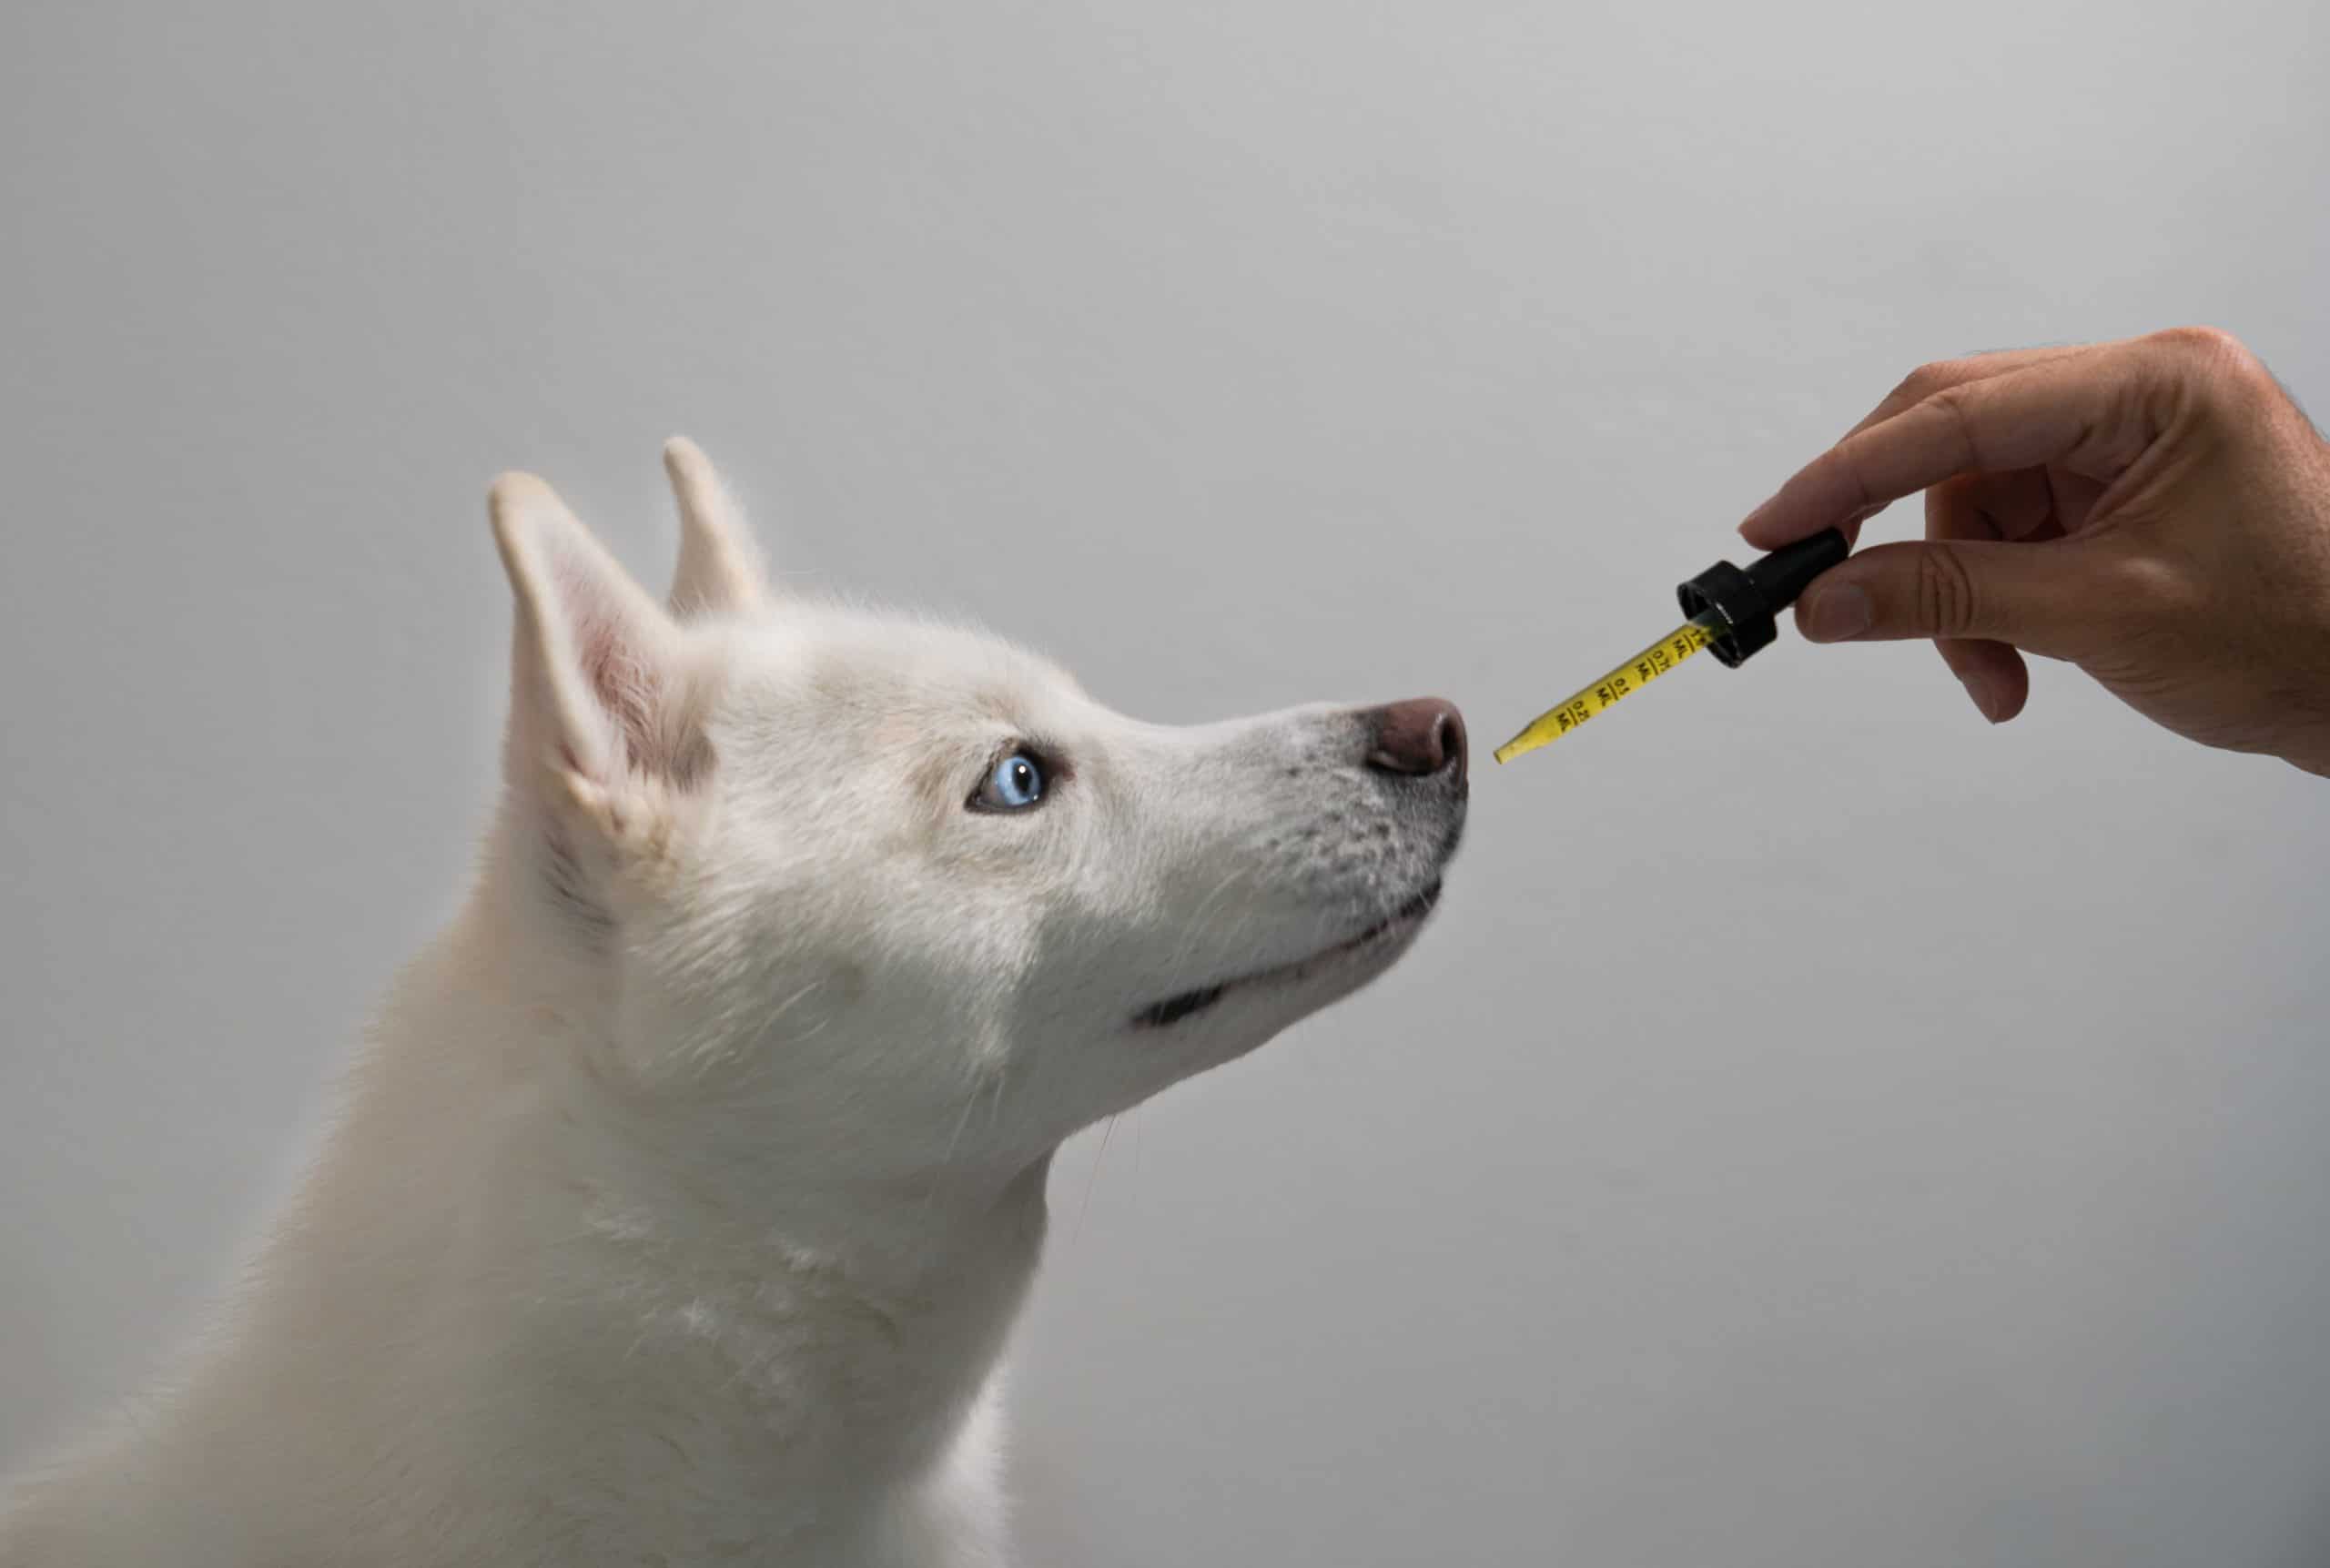 Owner gives white dog CBD oil.